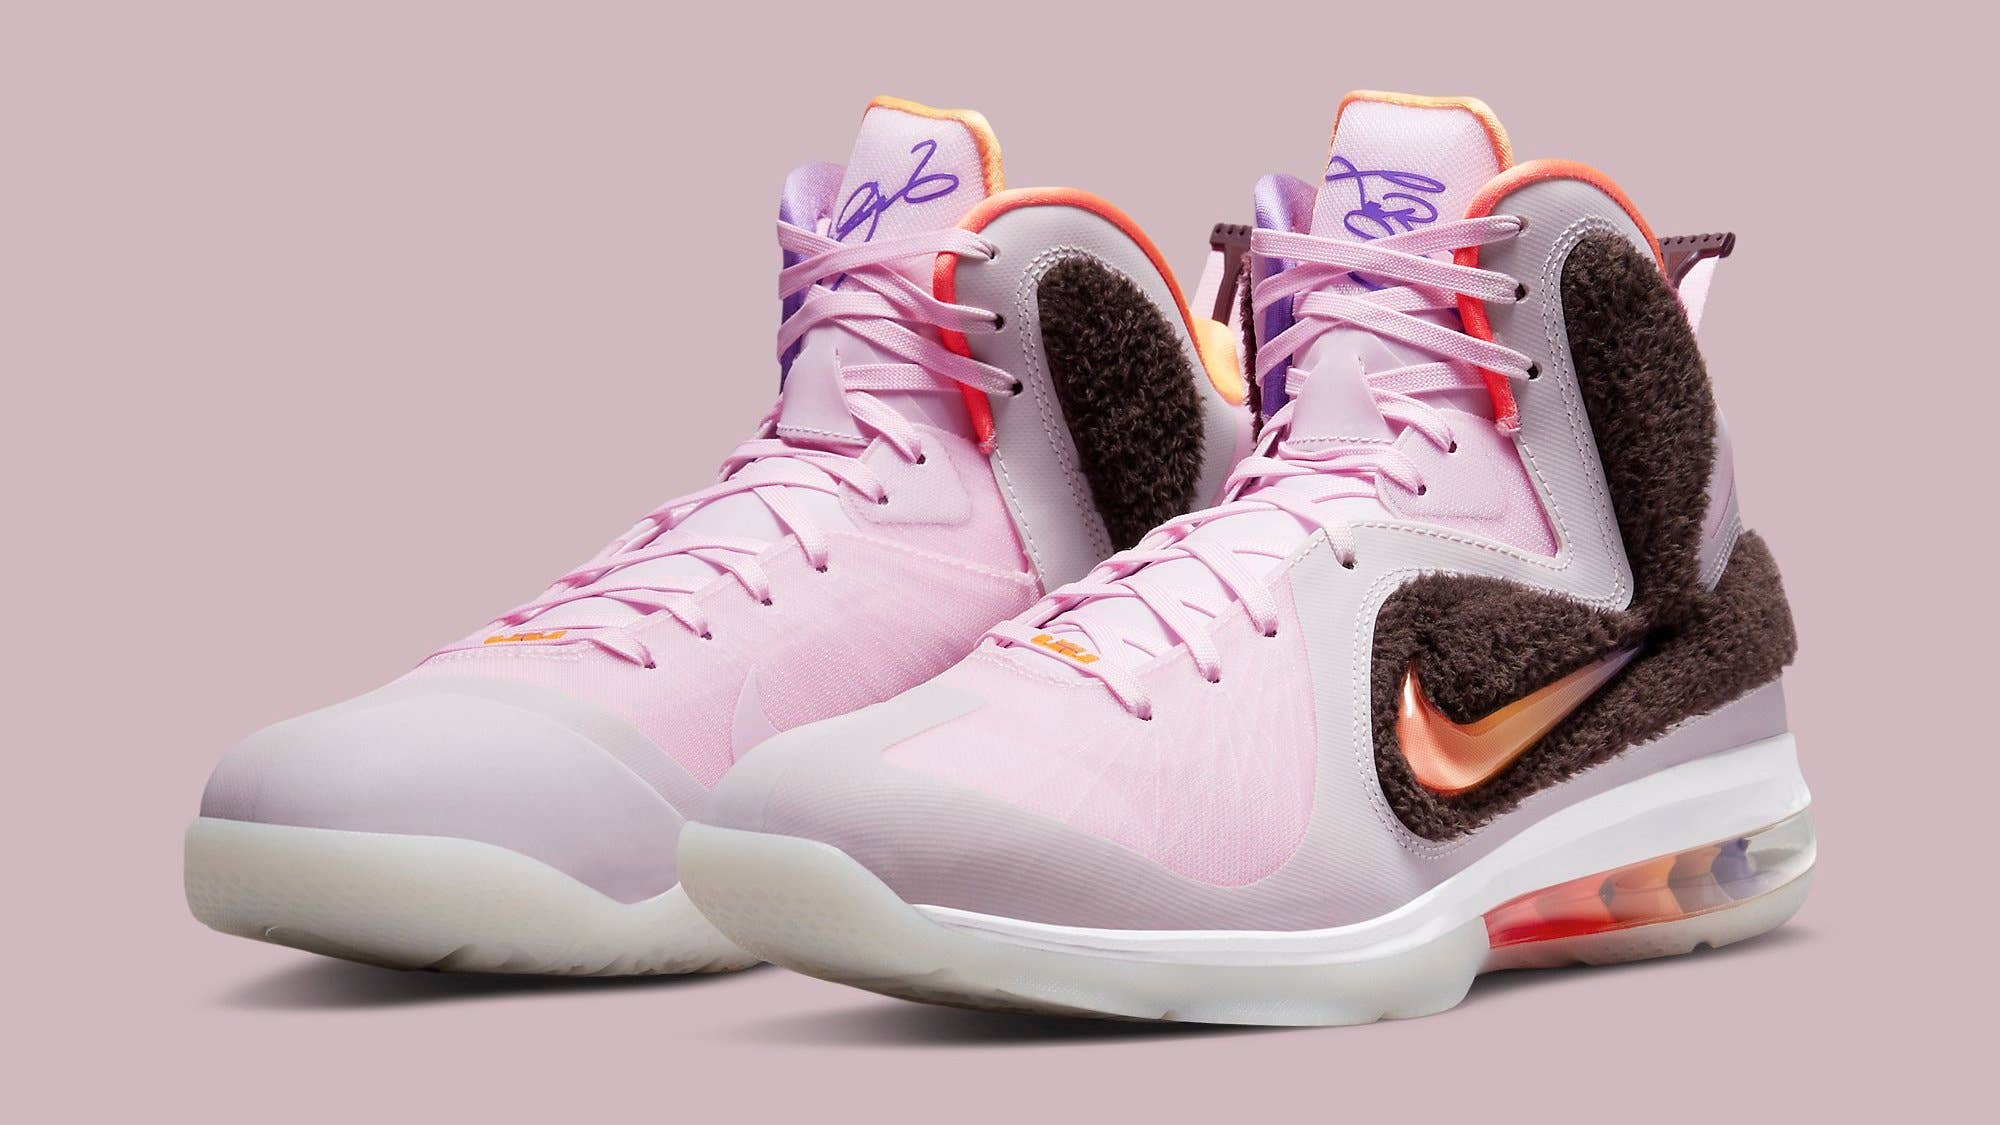 Nike LeBron 9 'Regal Pink' DJ3908 600 Pair